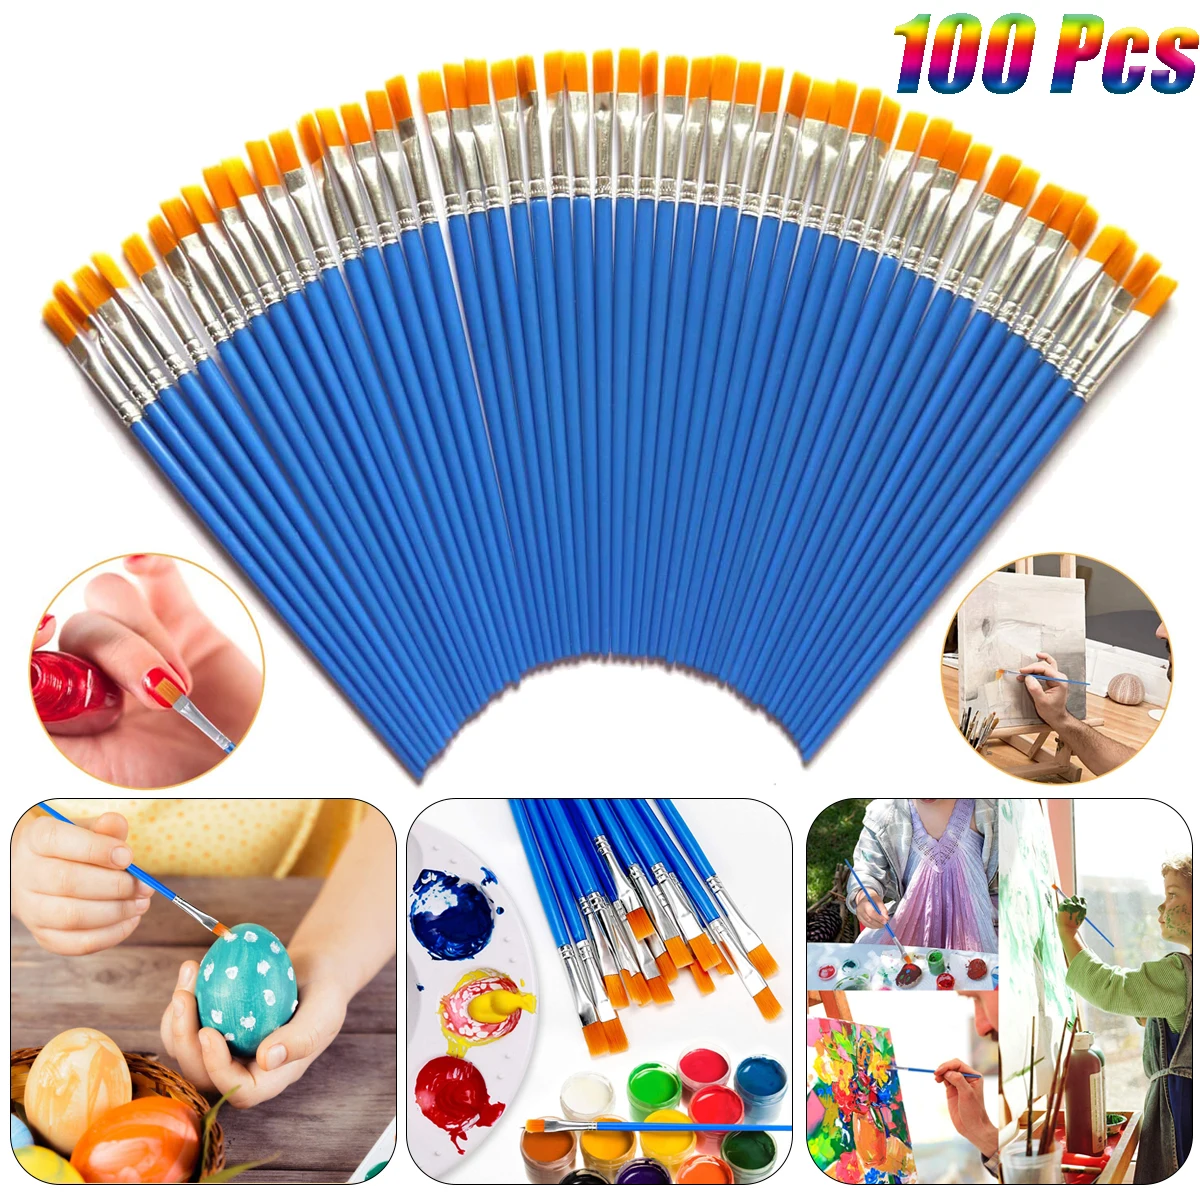 

100 Pcs Flat Paint Brushes Small Brush Bulk for Detail Painting Oil Art Nylon Hair Brushes Acrylic for Kids Children Students